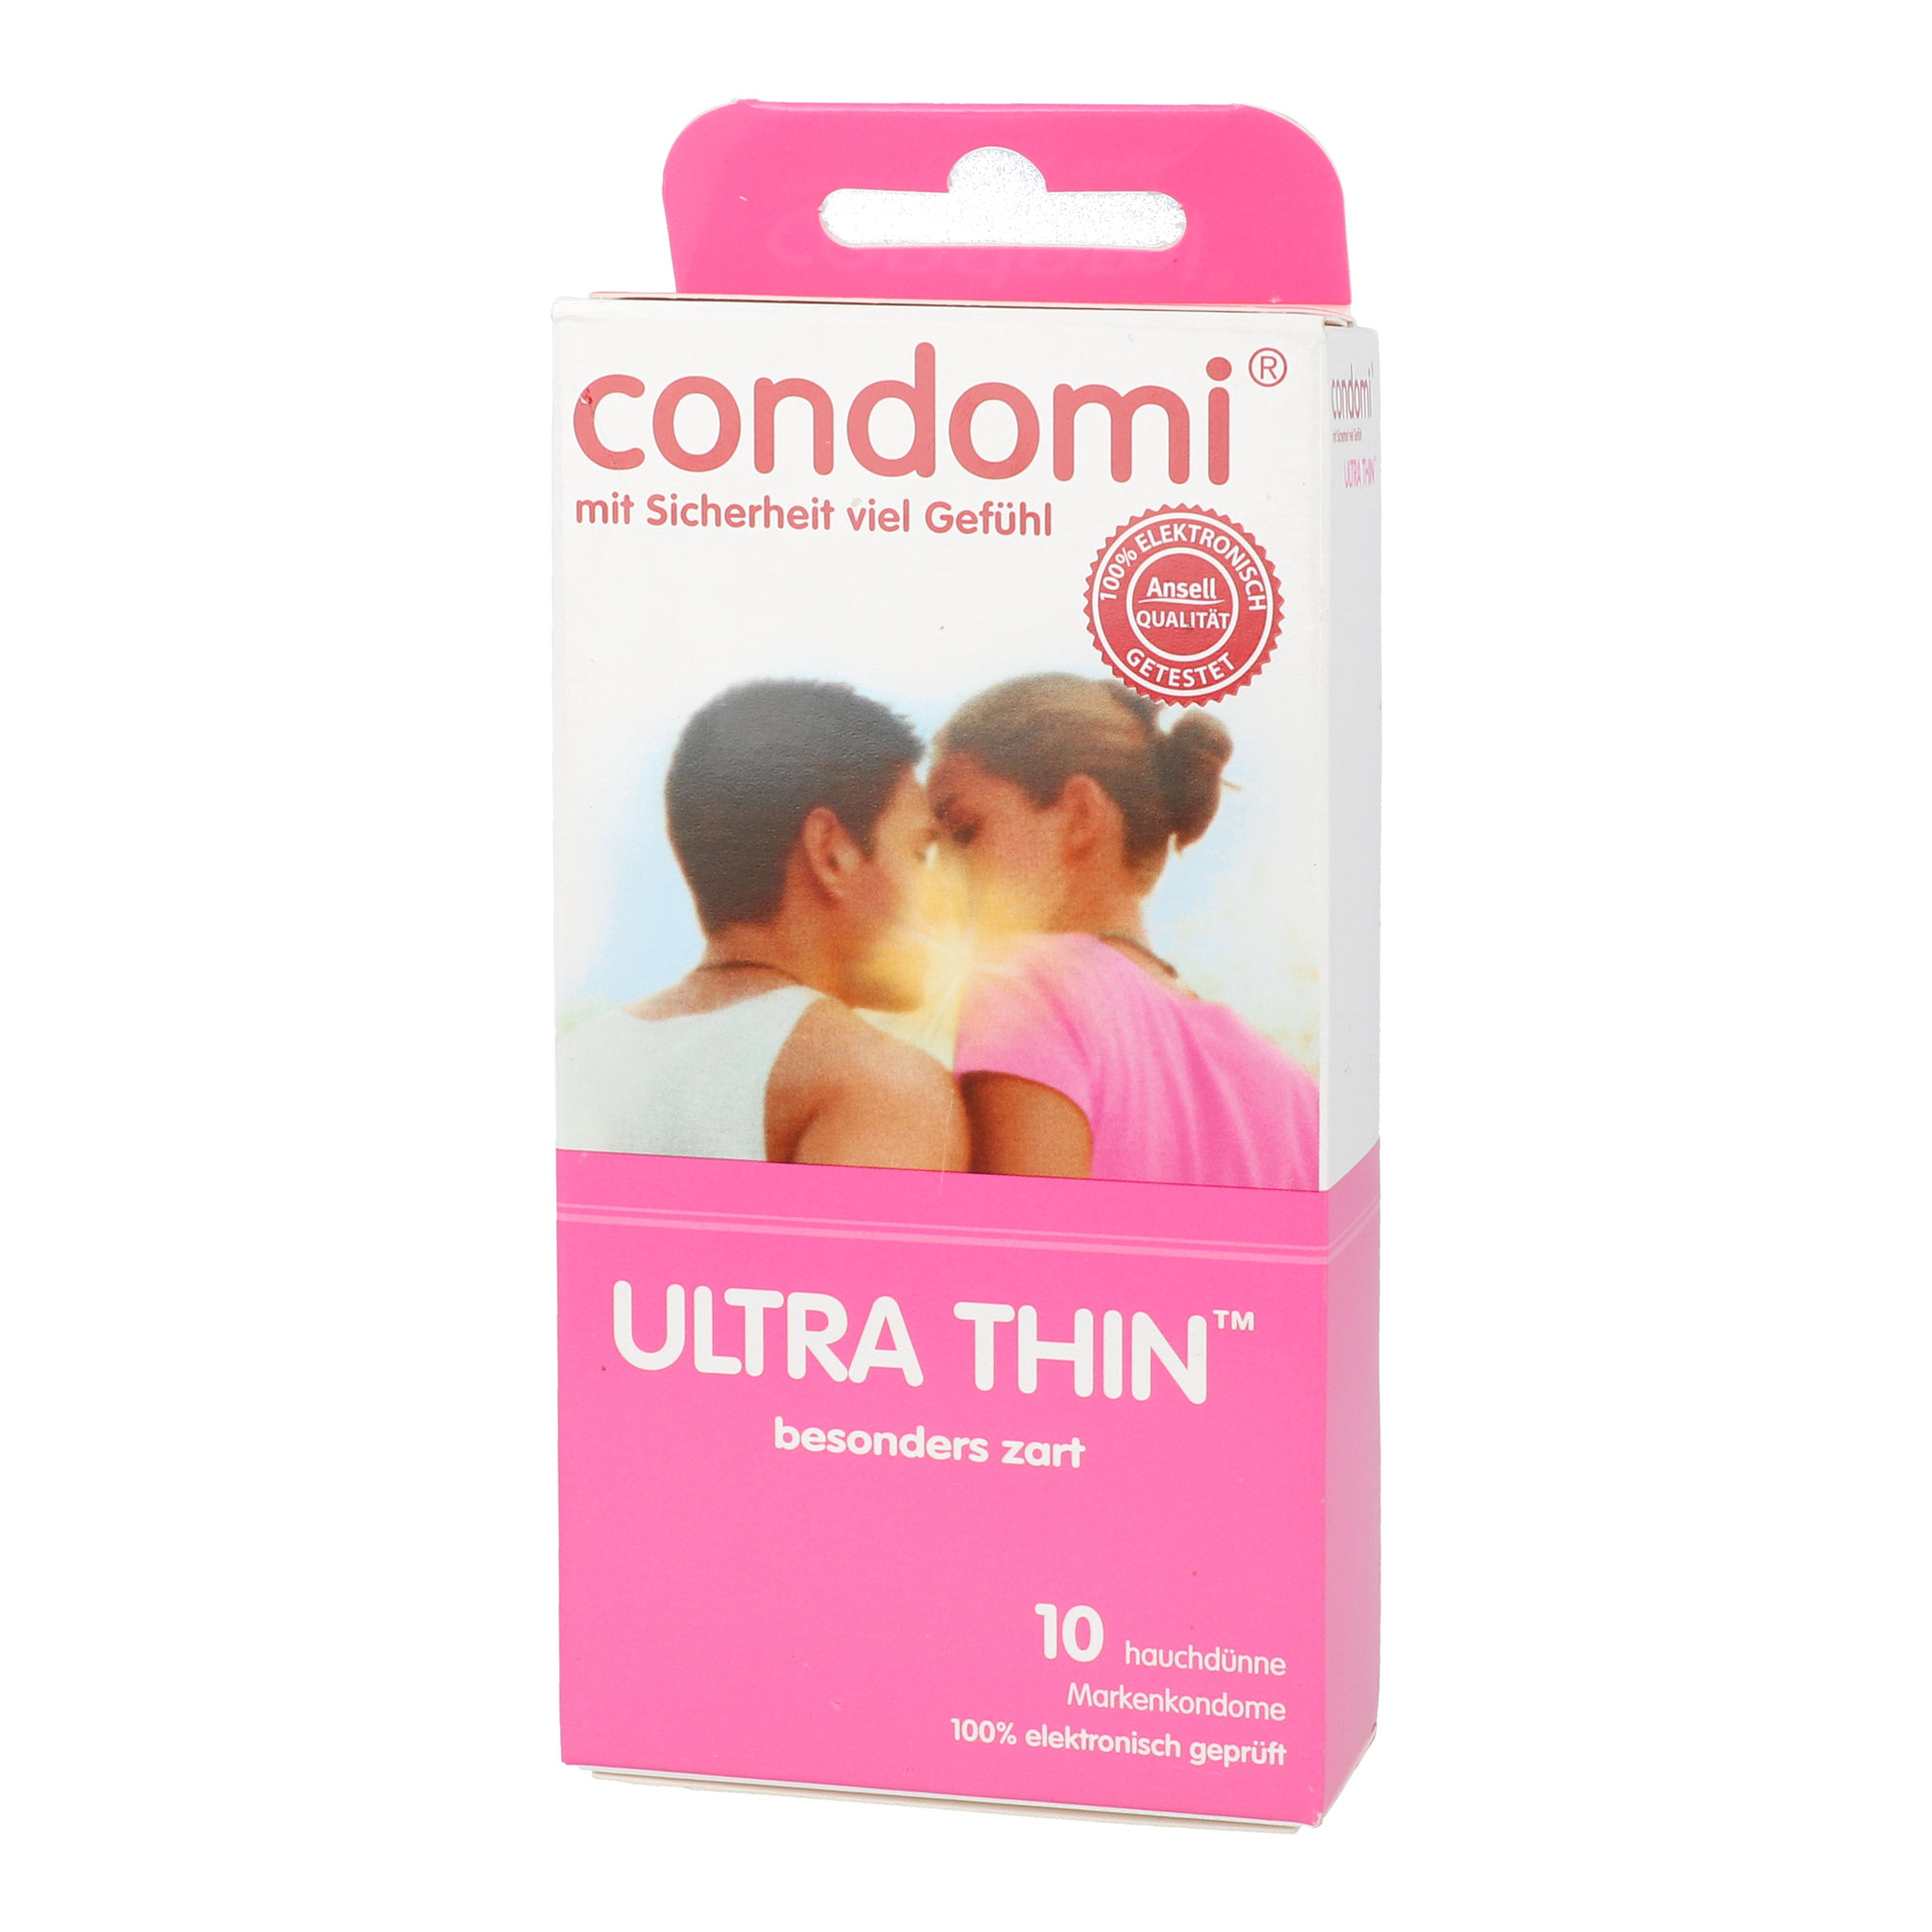 10 hauchzarte Kondome für mehr Gefühl.